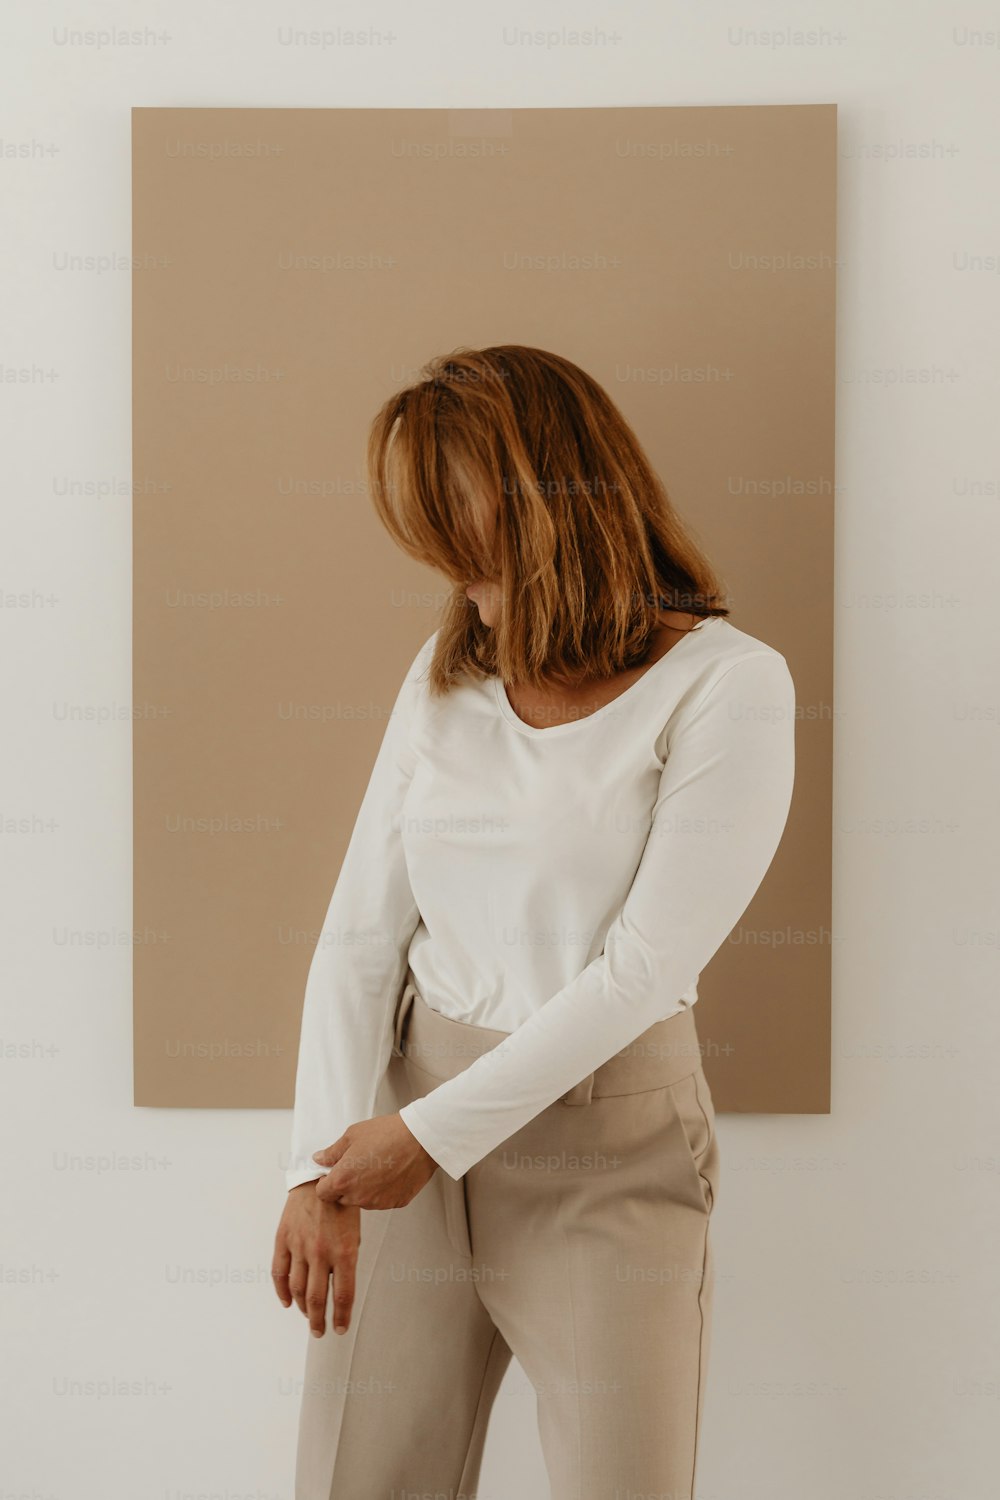 Una mujer parada frente a una pintura